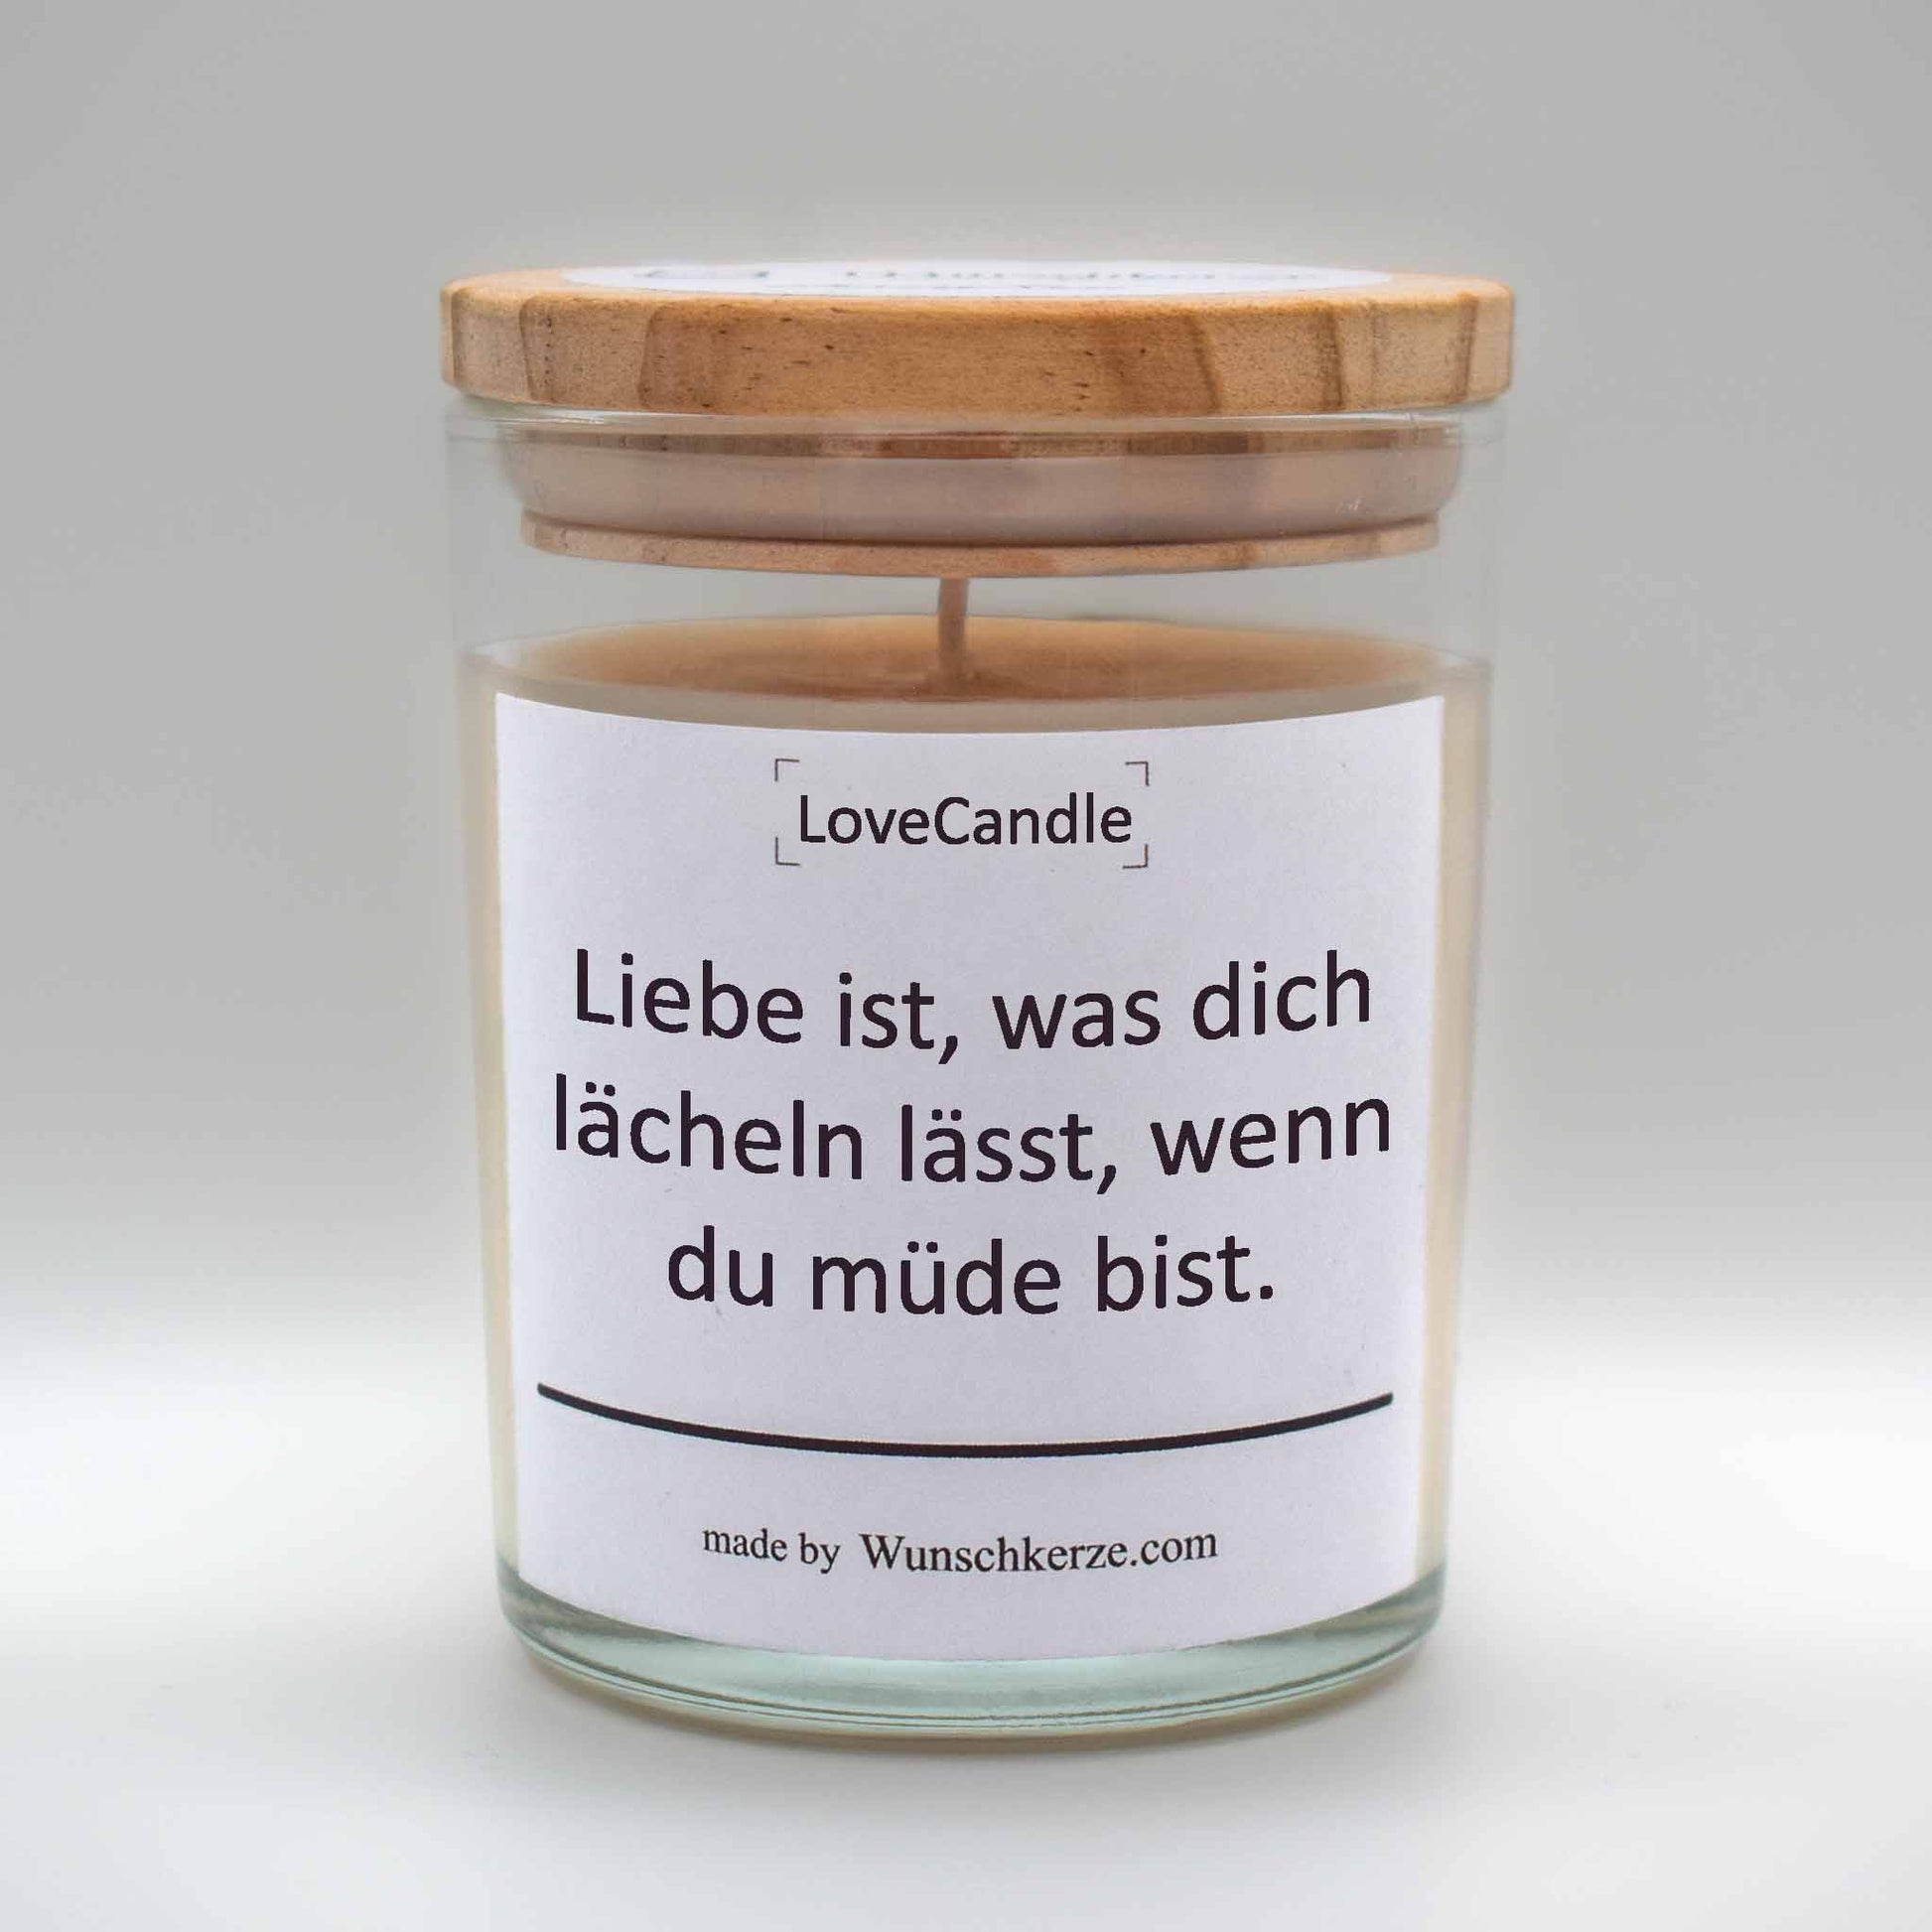 Soja Duftkerze im Glas mit Deckel aus Kiefernholz mit einem Label. Aufschrift: LoveCandle - Liebe ist, was dich lächeln lässt, wenn du müde bist.